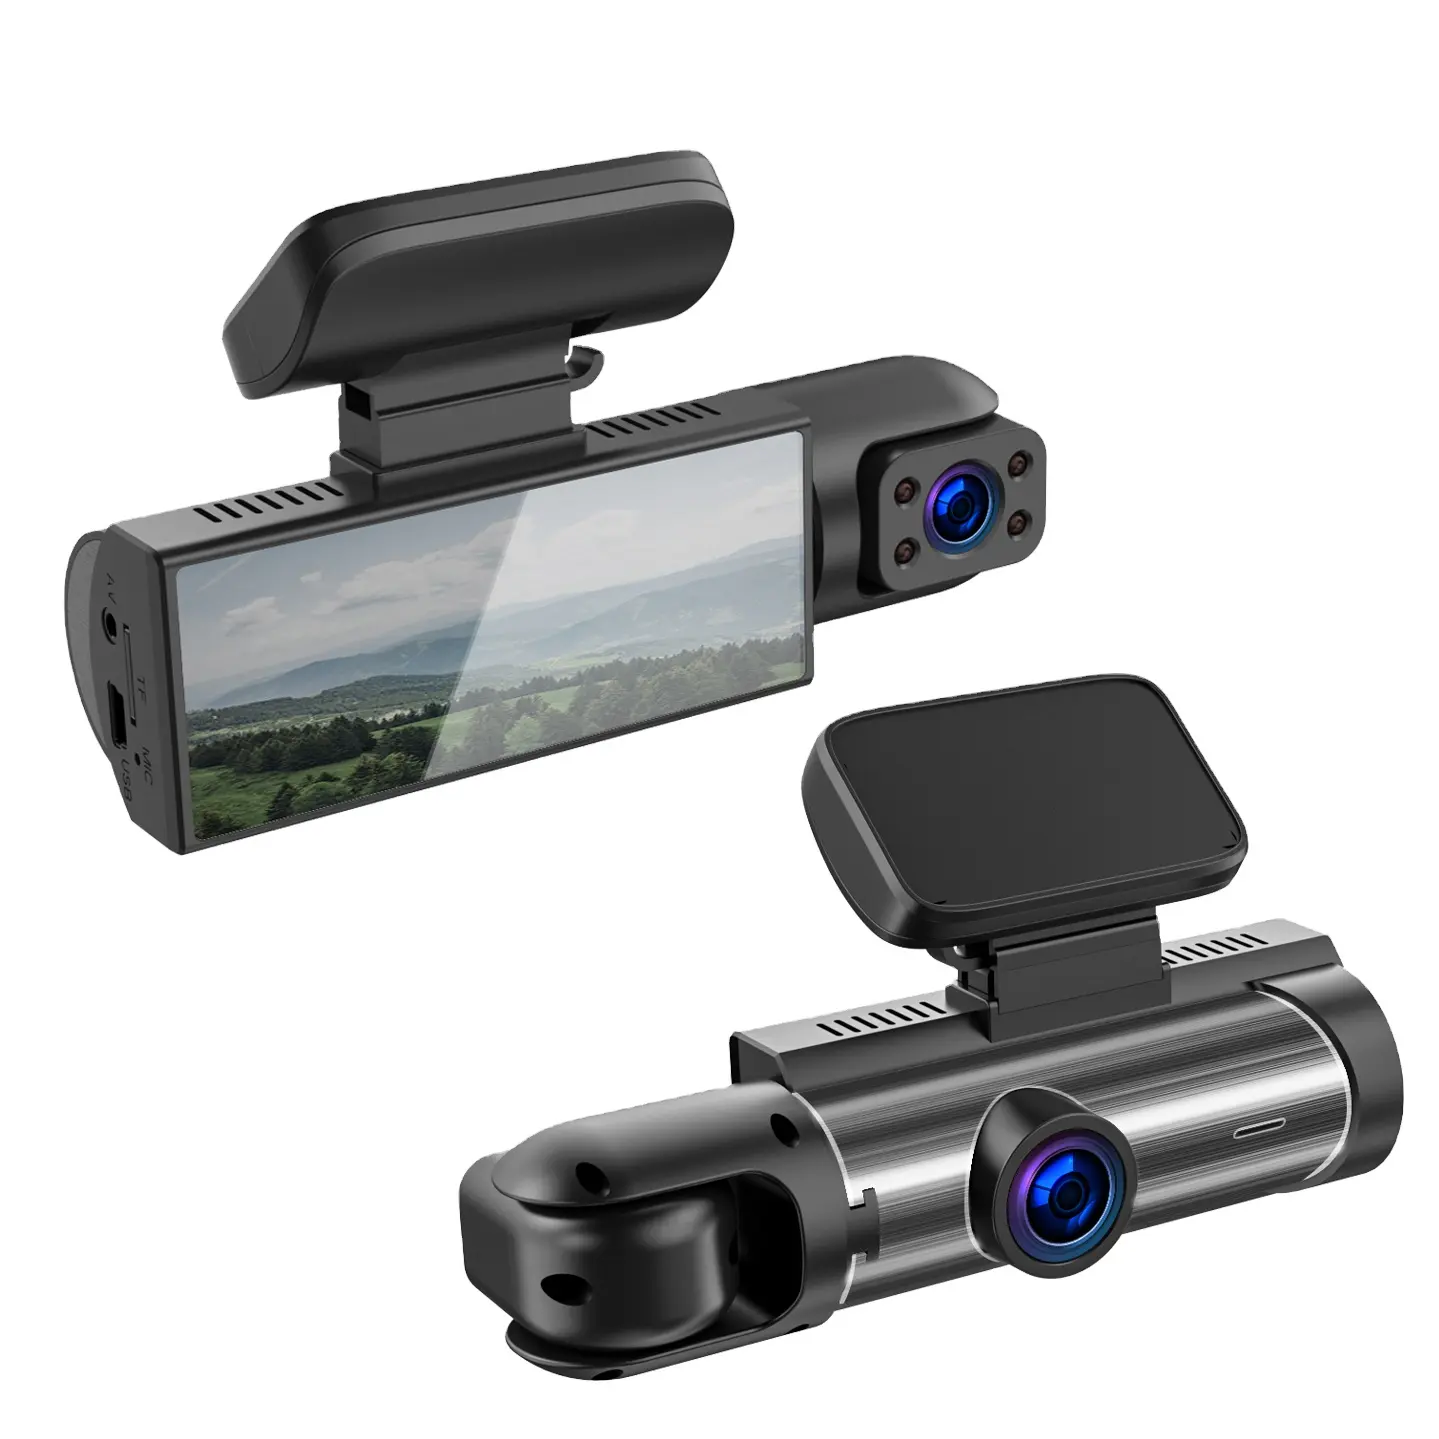 새로운 듀얼 렌즈 대시 캠 Dvr 블랙 박스 풀 Hd Dashcam 자동차 Dvr 차량 카메라 와이파이 1080 마력